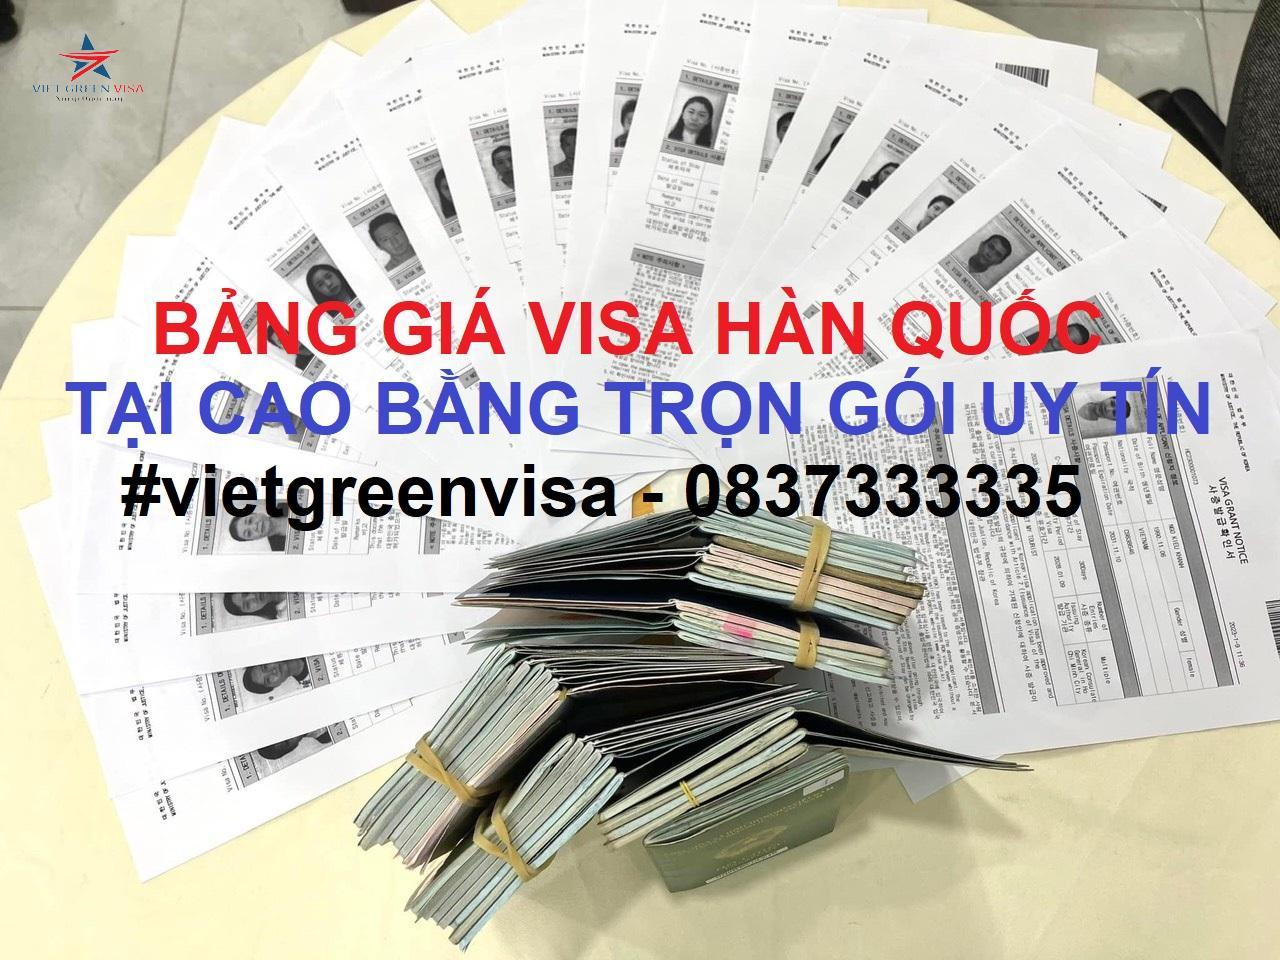 Dịch vụ xin visa Hàn Quốc tại Cao Bằng trọn gói